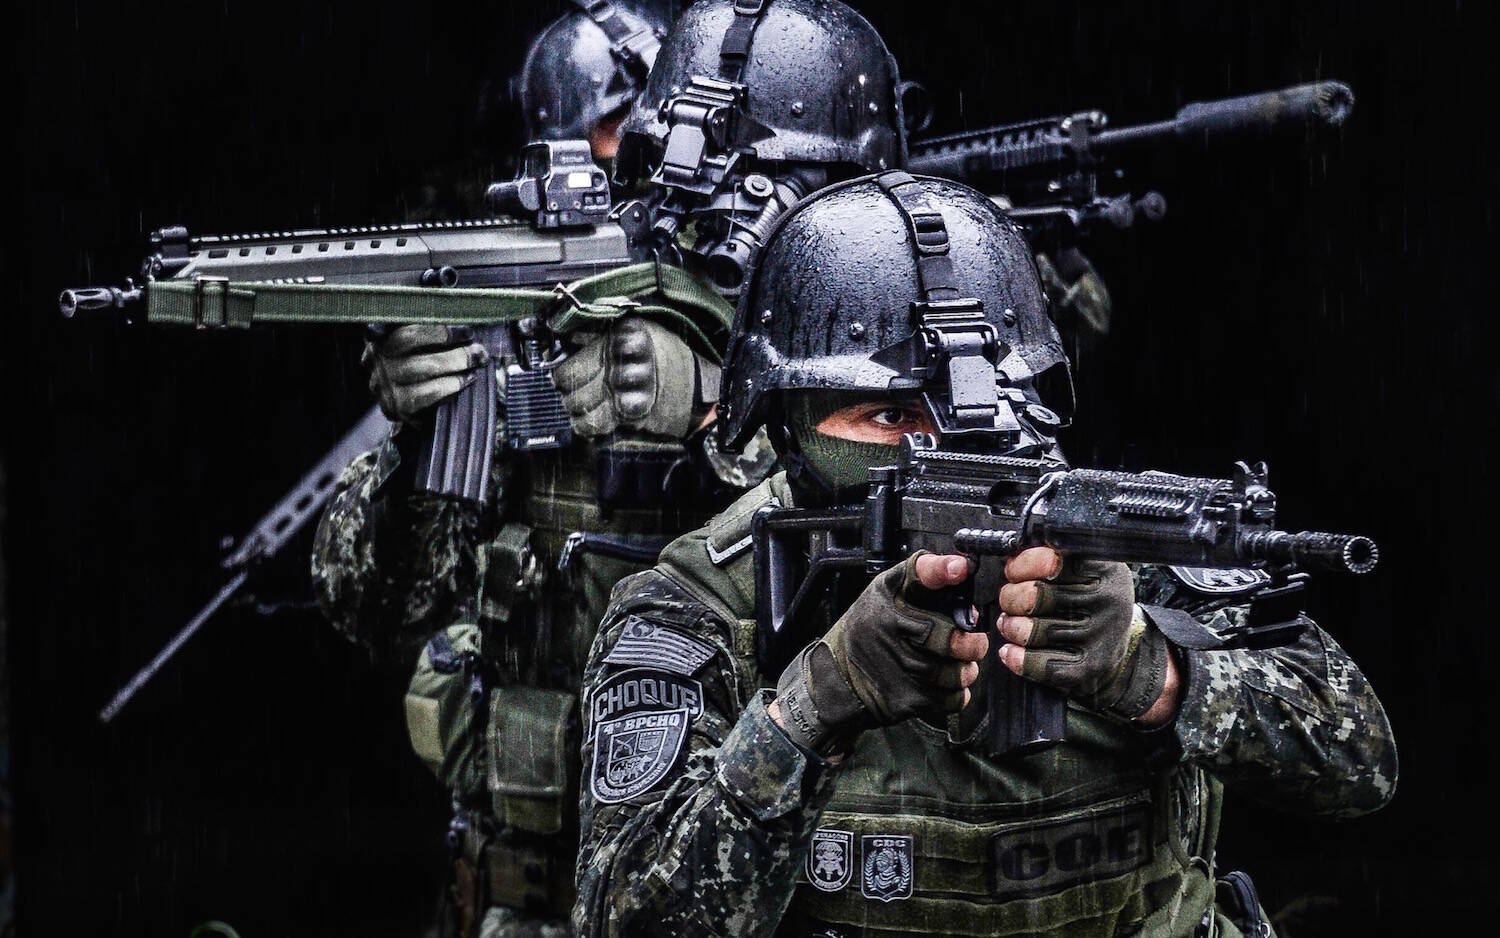 Comandos e Operações Especiais 4º Batalhão de Choque - Polícia Militar do Estado de São Paulo. Foto: Major PM Luis Augusto Pacheco Ambar